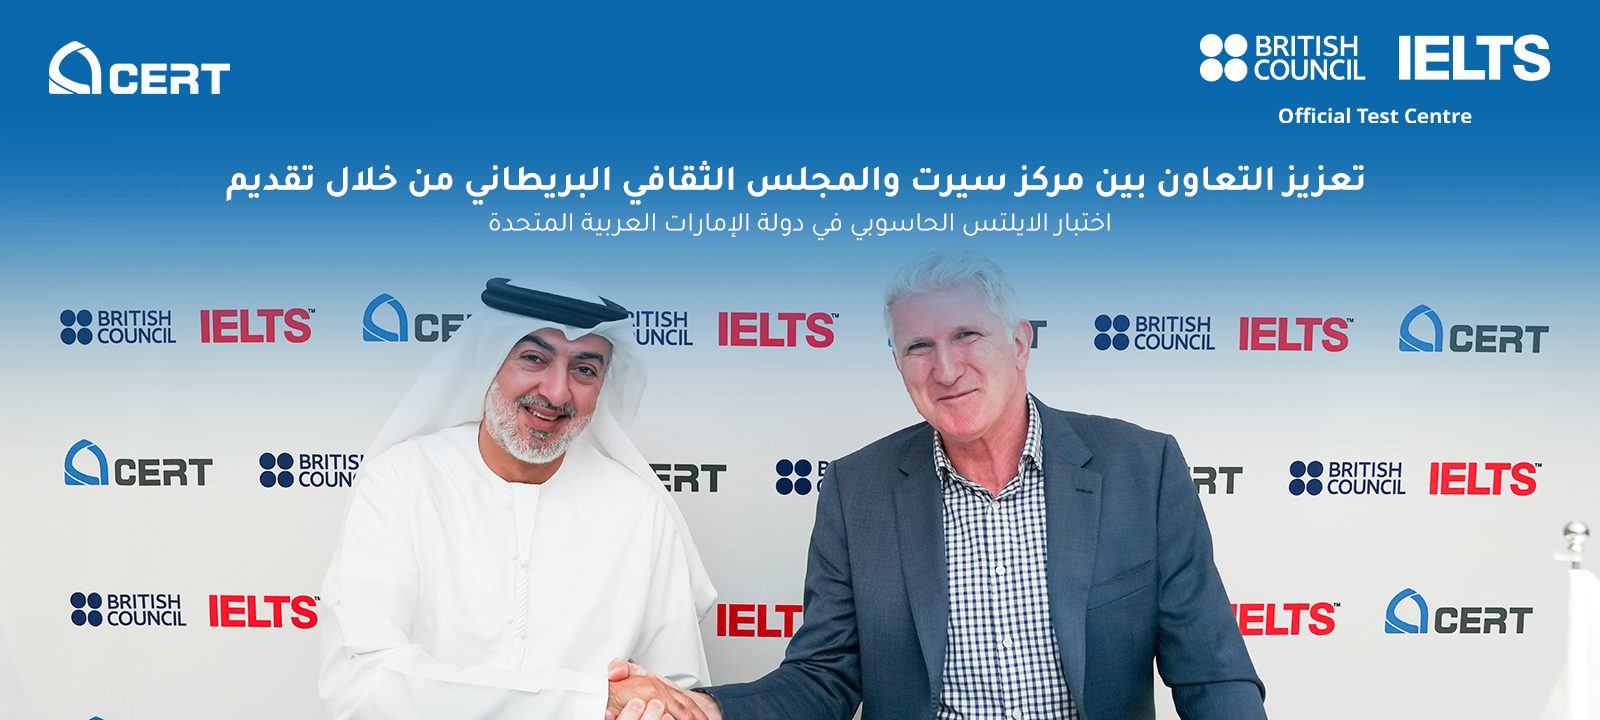 تعزيز التعاون بين مركز سيرت والمجلس الثقافي البريطاني من خلال تقديم اختبار الايلتس الحاسوبي في دولة الإمارات العربية المتحدة